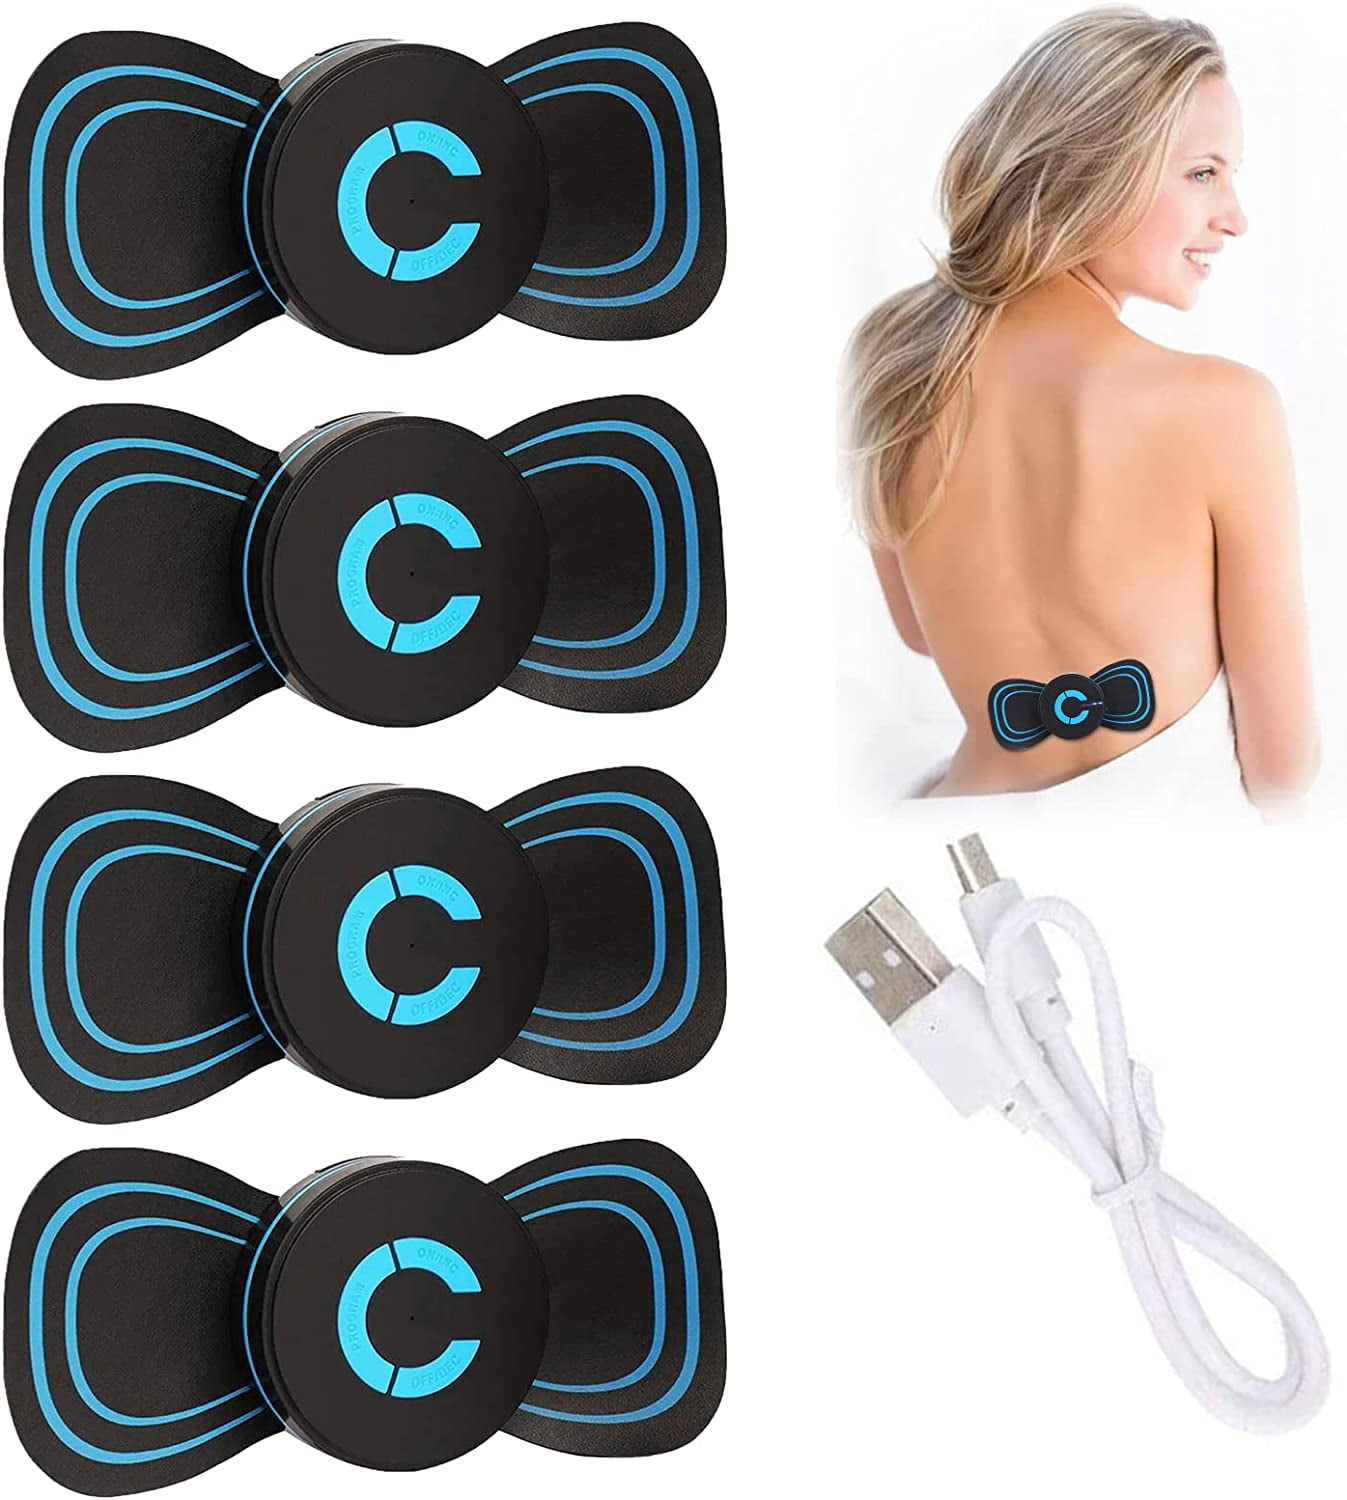 High-Tech Portable Neck Massagers : portable neck massager